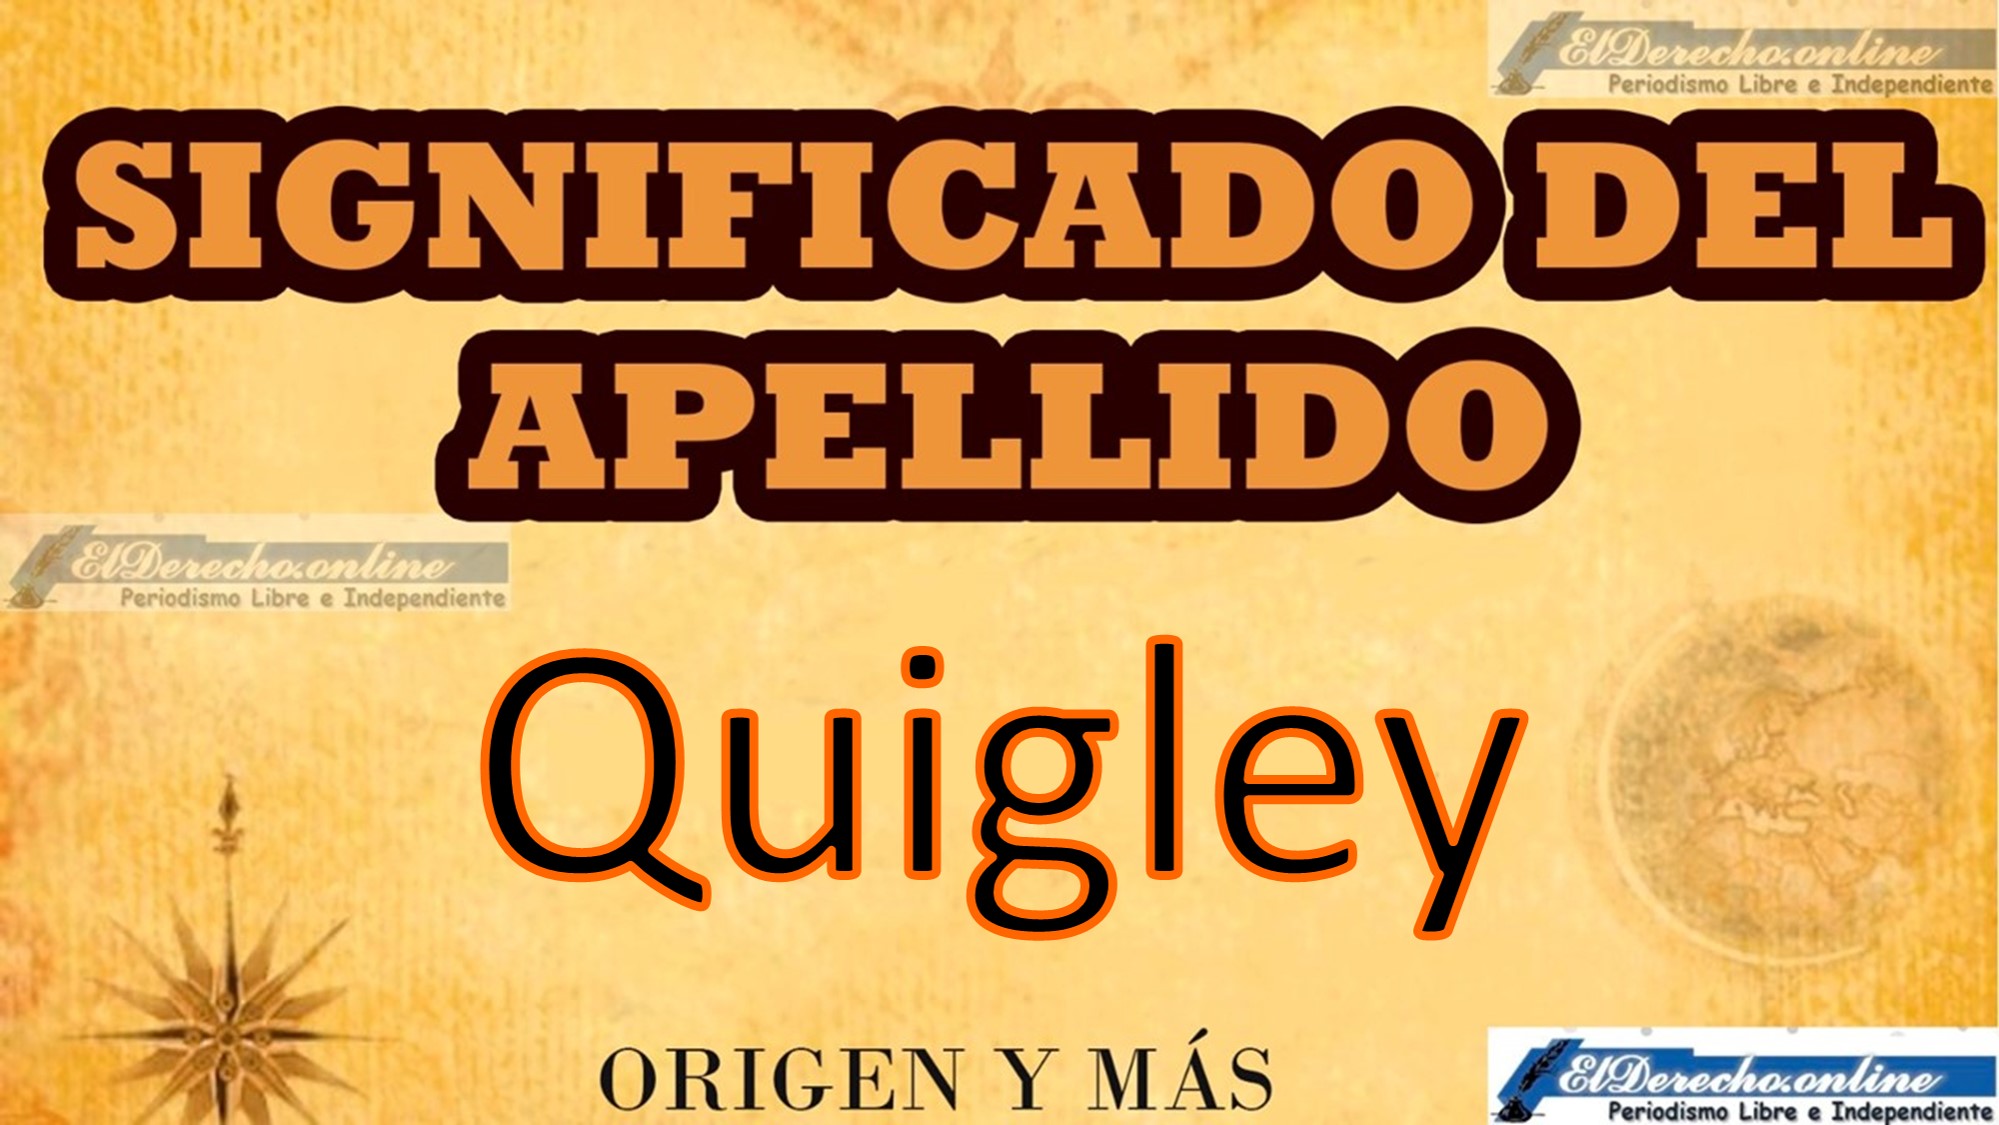 Significado del apellido Quigley, Origen y más